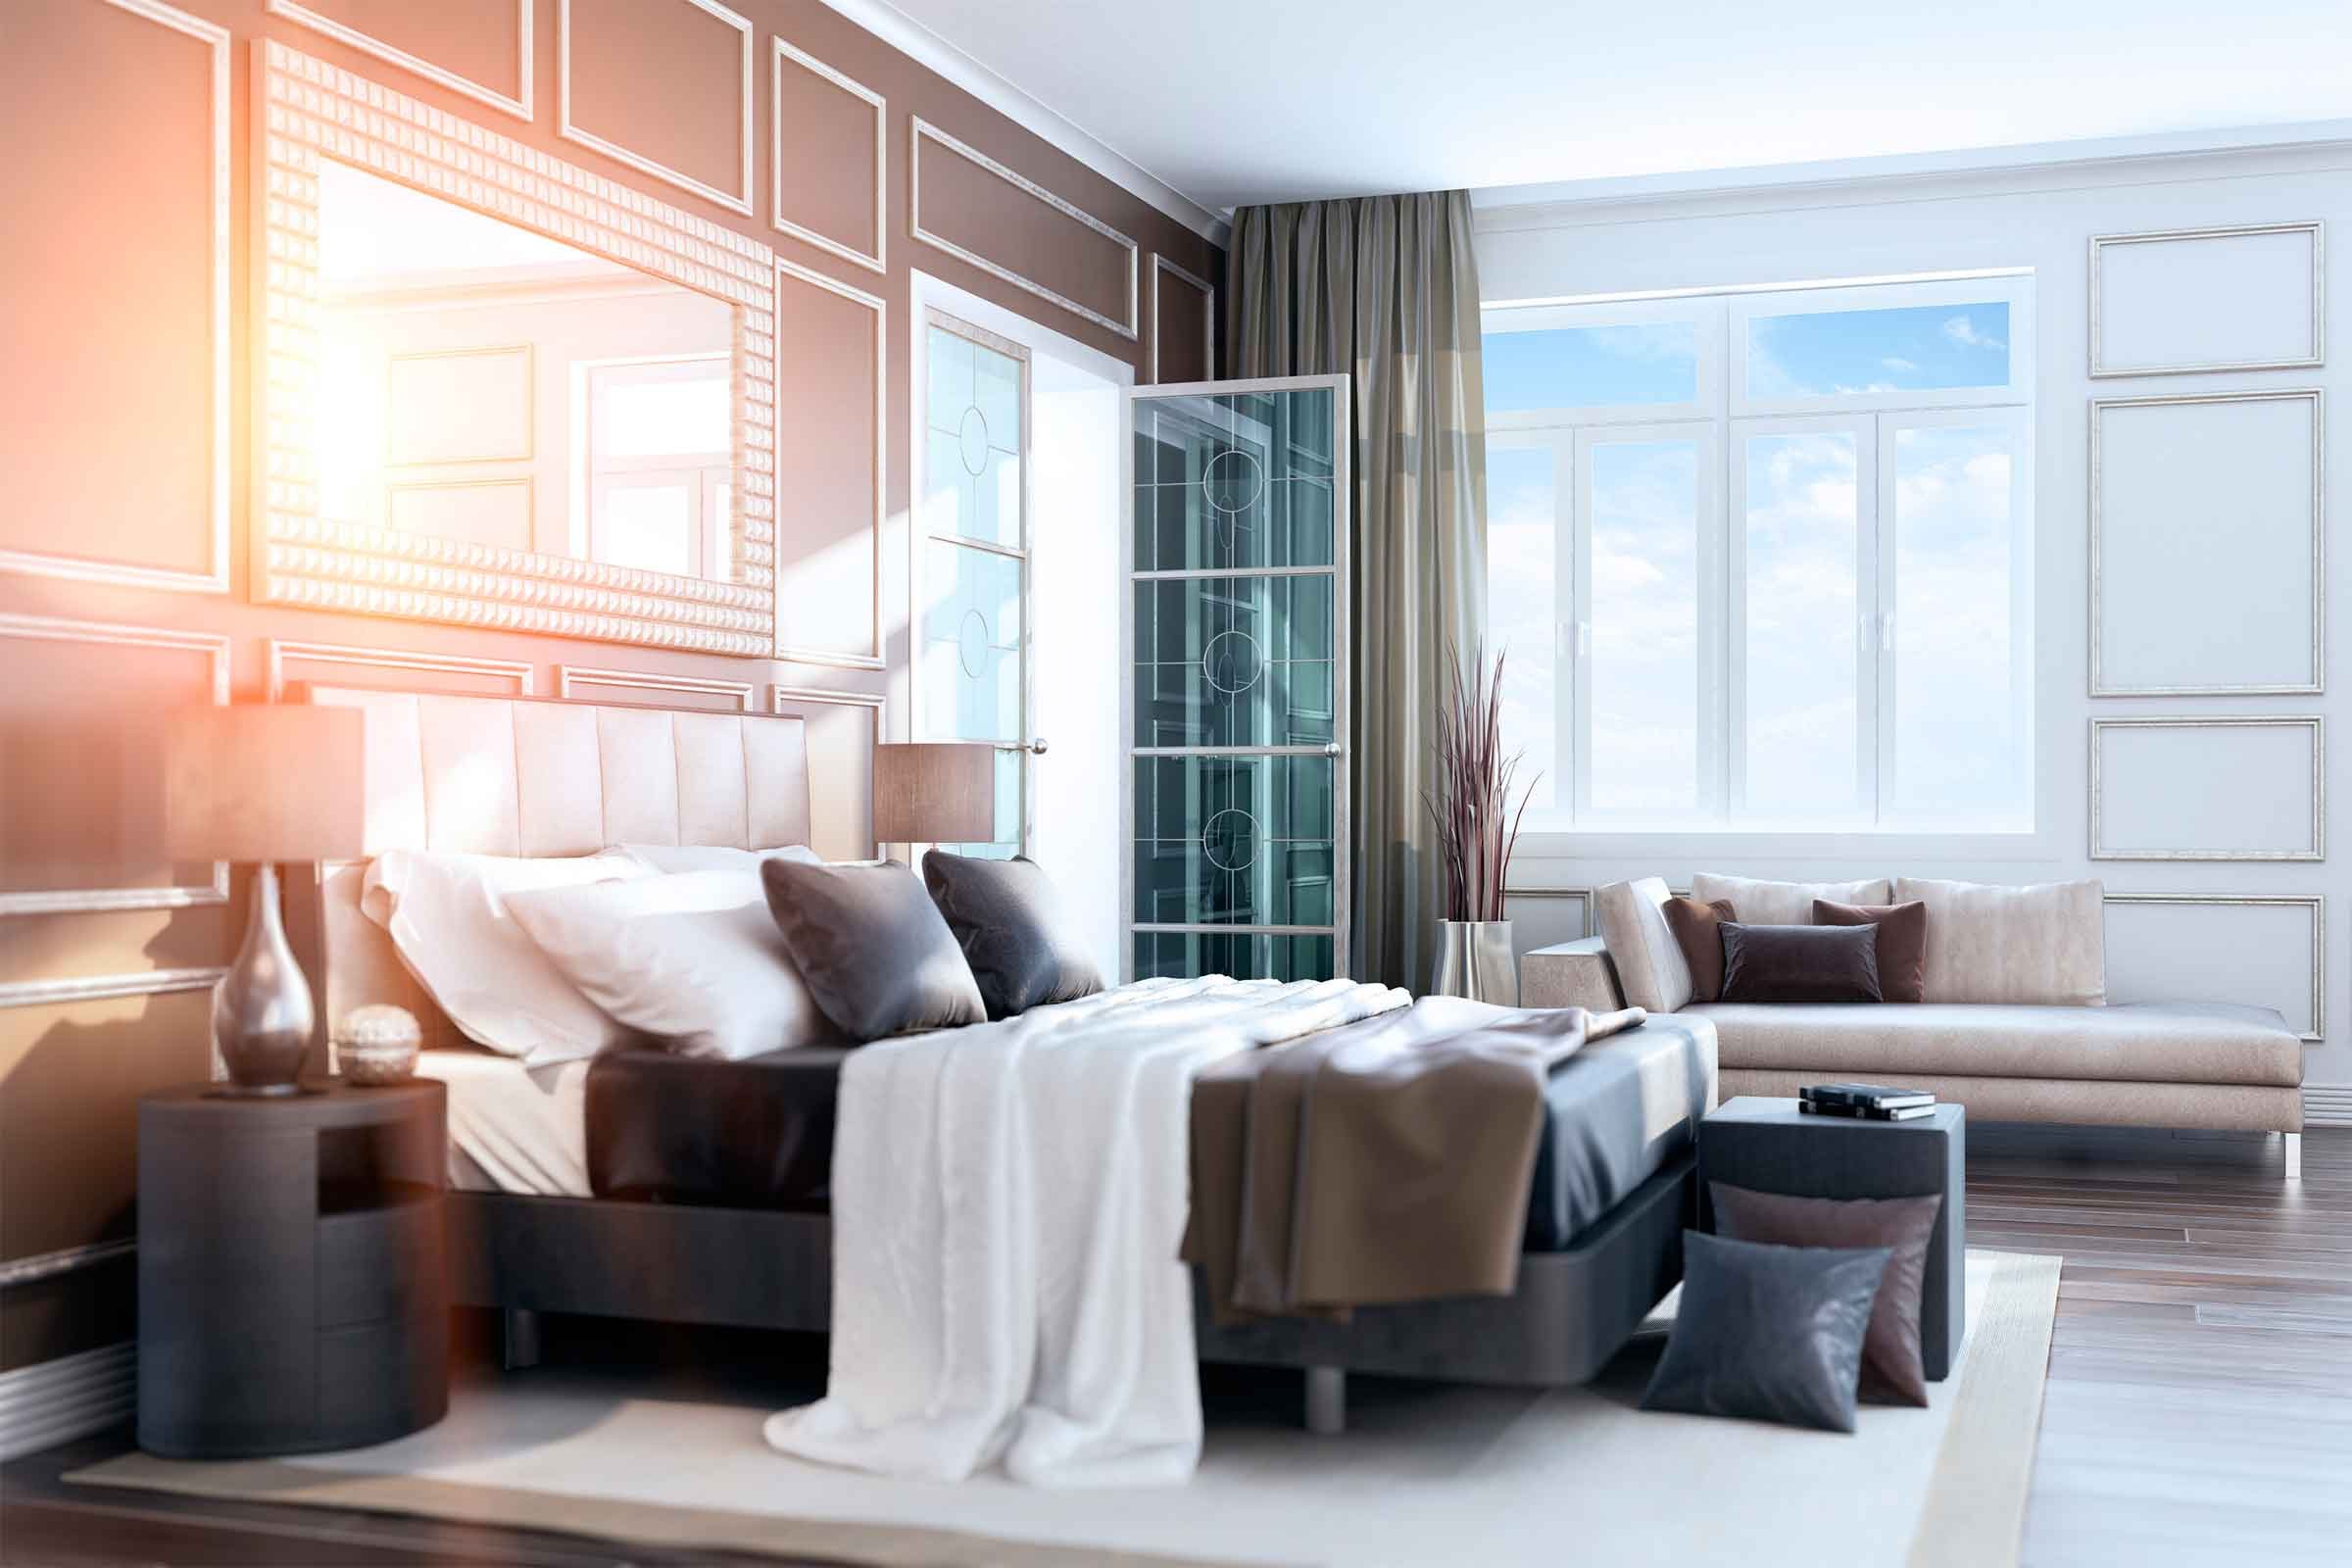 Copia questi 16 trucchi di decorazione dalle camere d albergo per rendere la tua casa assolutamente adorabile 